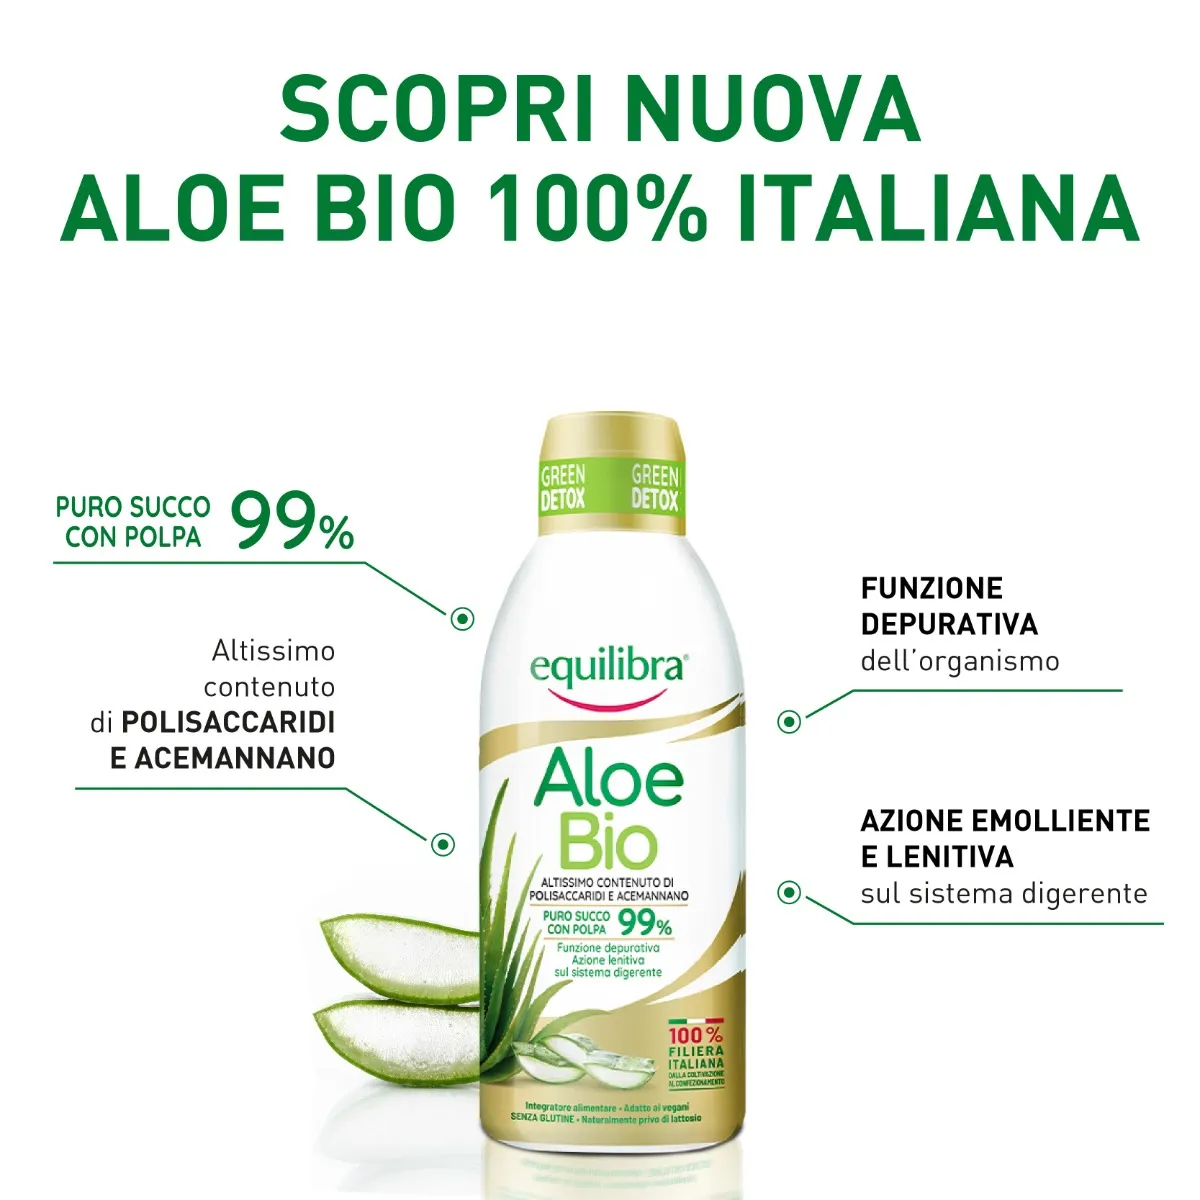 Equilibra Aloe Bio 750 Ml Succo con Polpa